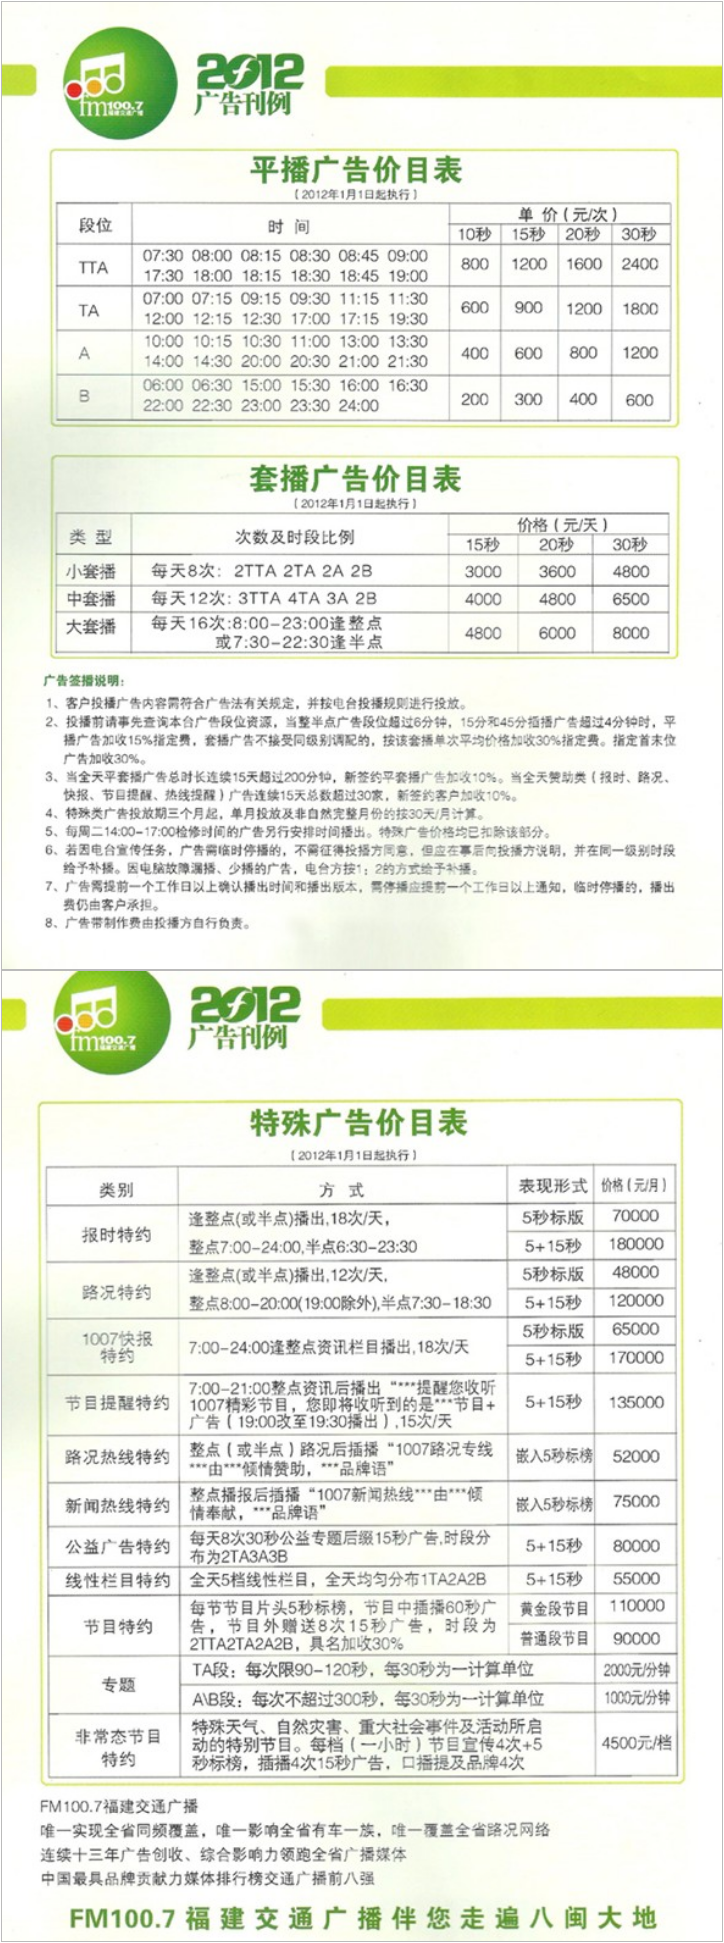 2012福建人民广播电台交通广播 FM100.7广告报价表.png